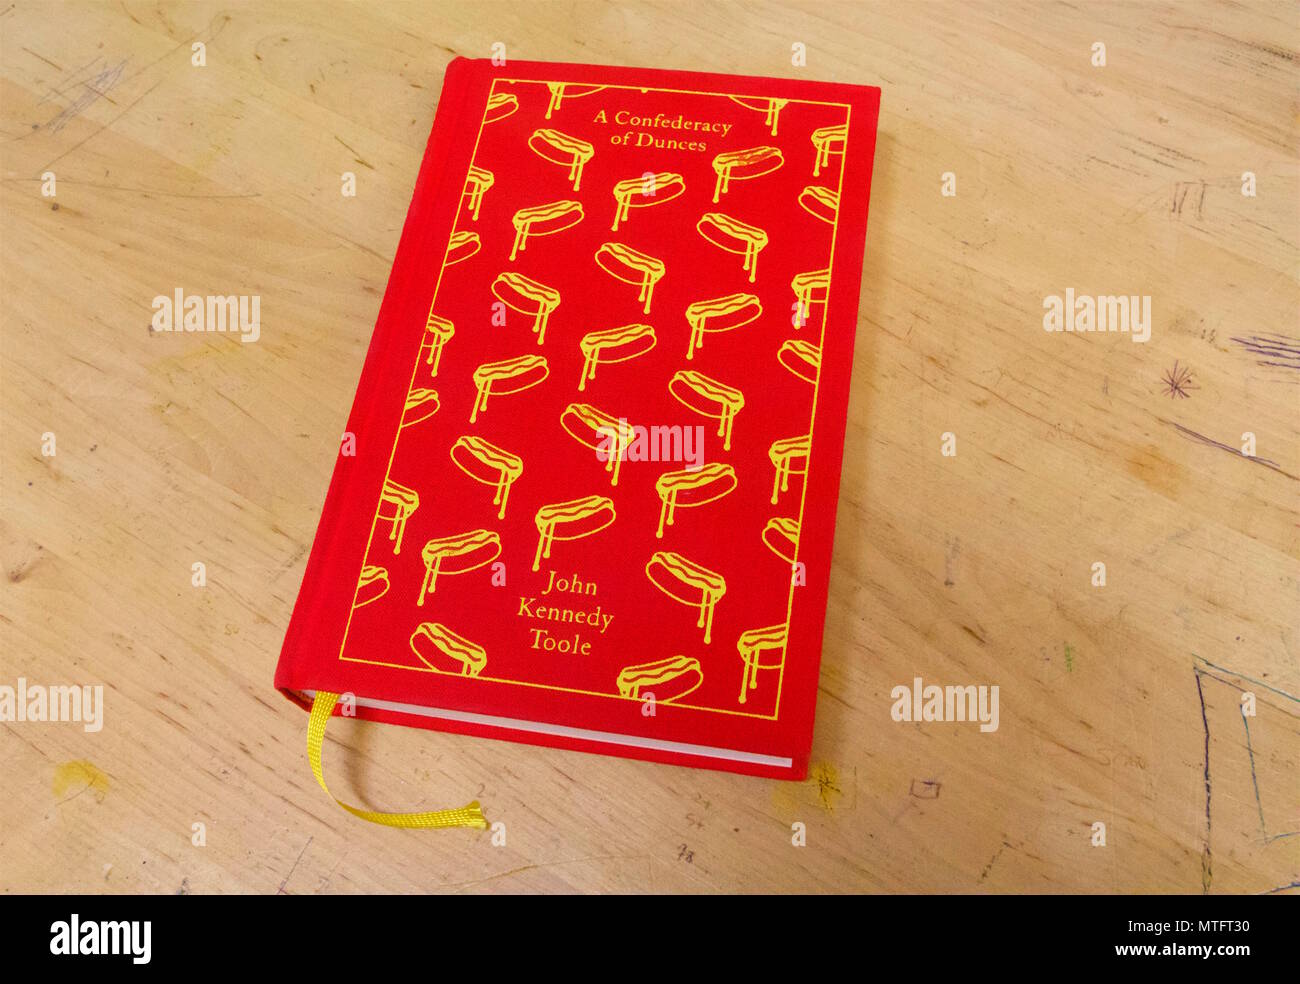 Eine Konföderation der Hohlköpfe, rot Hardcover Form auf einem Schreibtisch, ist ein schelmenroman von amerikanischen Romancier John Kennedy Toole Stockfoto